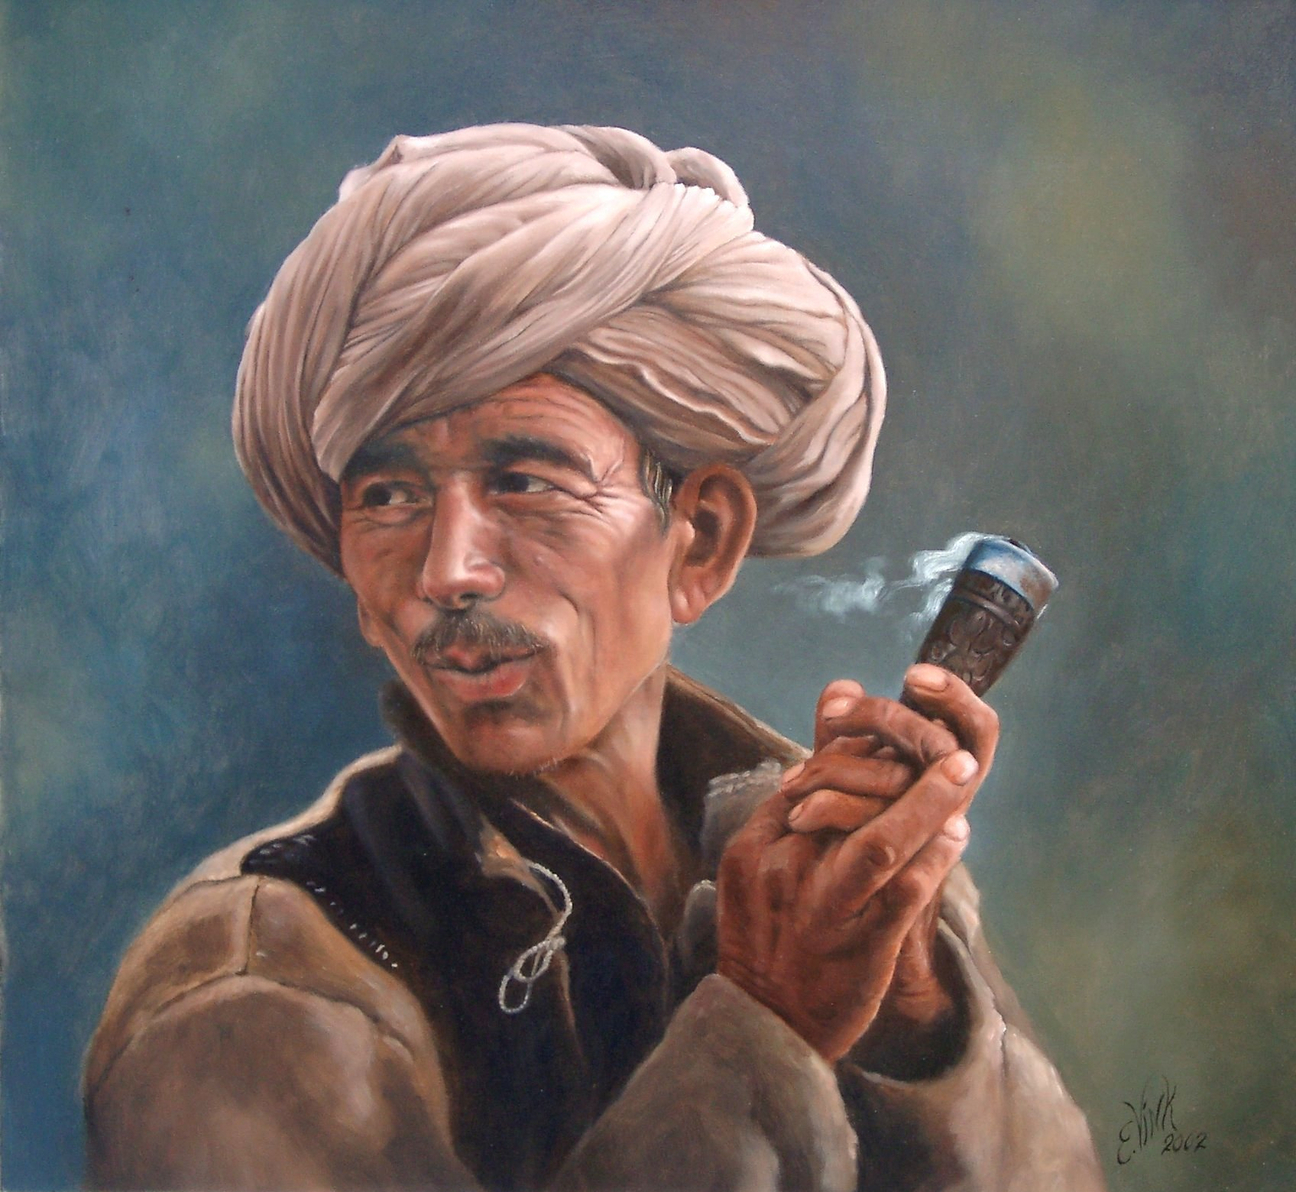 Portret van een man, een Nomade. Hij heeft duidelijk veel plezier in het roken van zijn pijp. Gemaakt door portretschilder Els Vink.